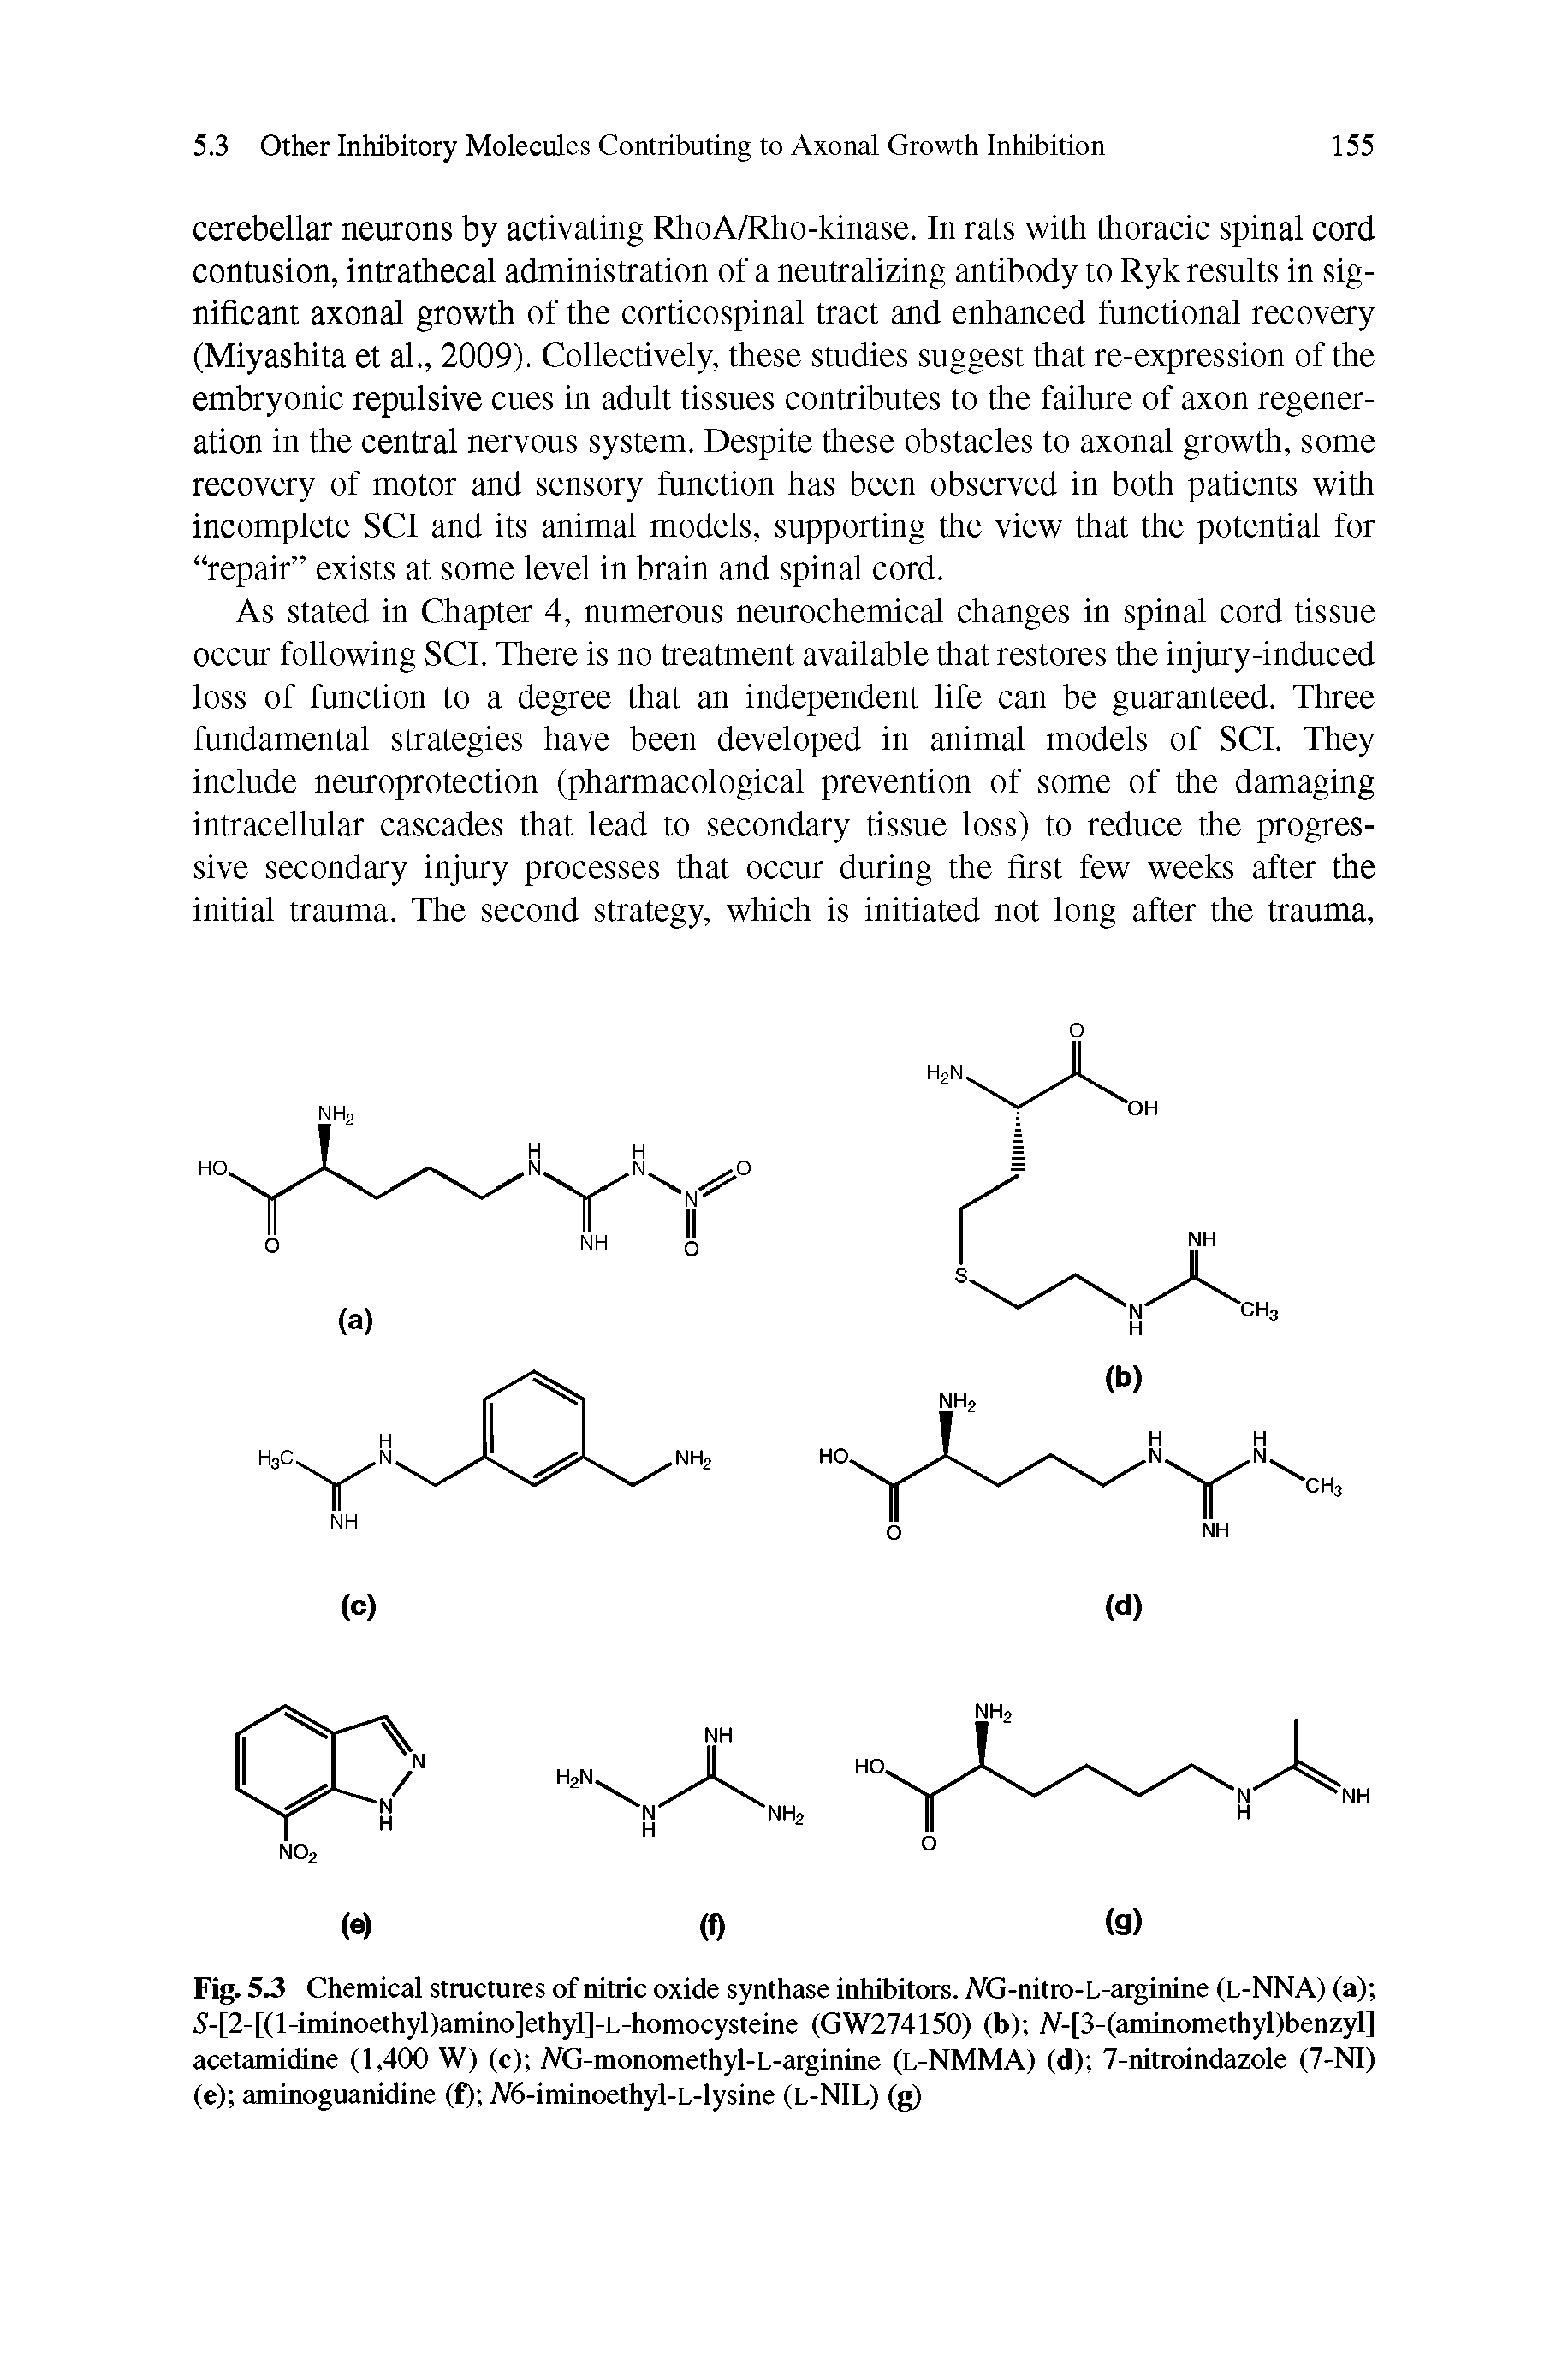 Fig. 5.3 Chemical structures of nitric oxide synthase inhibitors. Mj-nitro-L-arginine (L-NNA) (a) 5-[2-[(l-iminoethyl)amino]ethyl]-L-homocysteine (GW274150) (b) A-[3-(aminomethyl)benzyl] acetamidine (1,400 W) (c) AG-monomethyl-L-arginine (l-NMMA) (d) 7-nitroindazole (7-NI) (e) aminoguanidine (f) A6-iminoethyl-L-lysine (L-NIL) (g)...